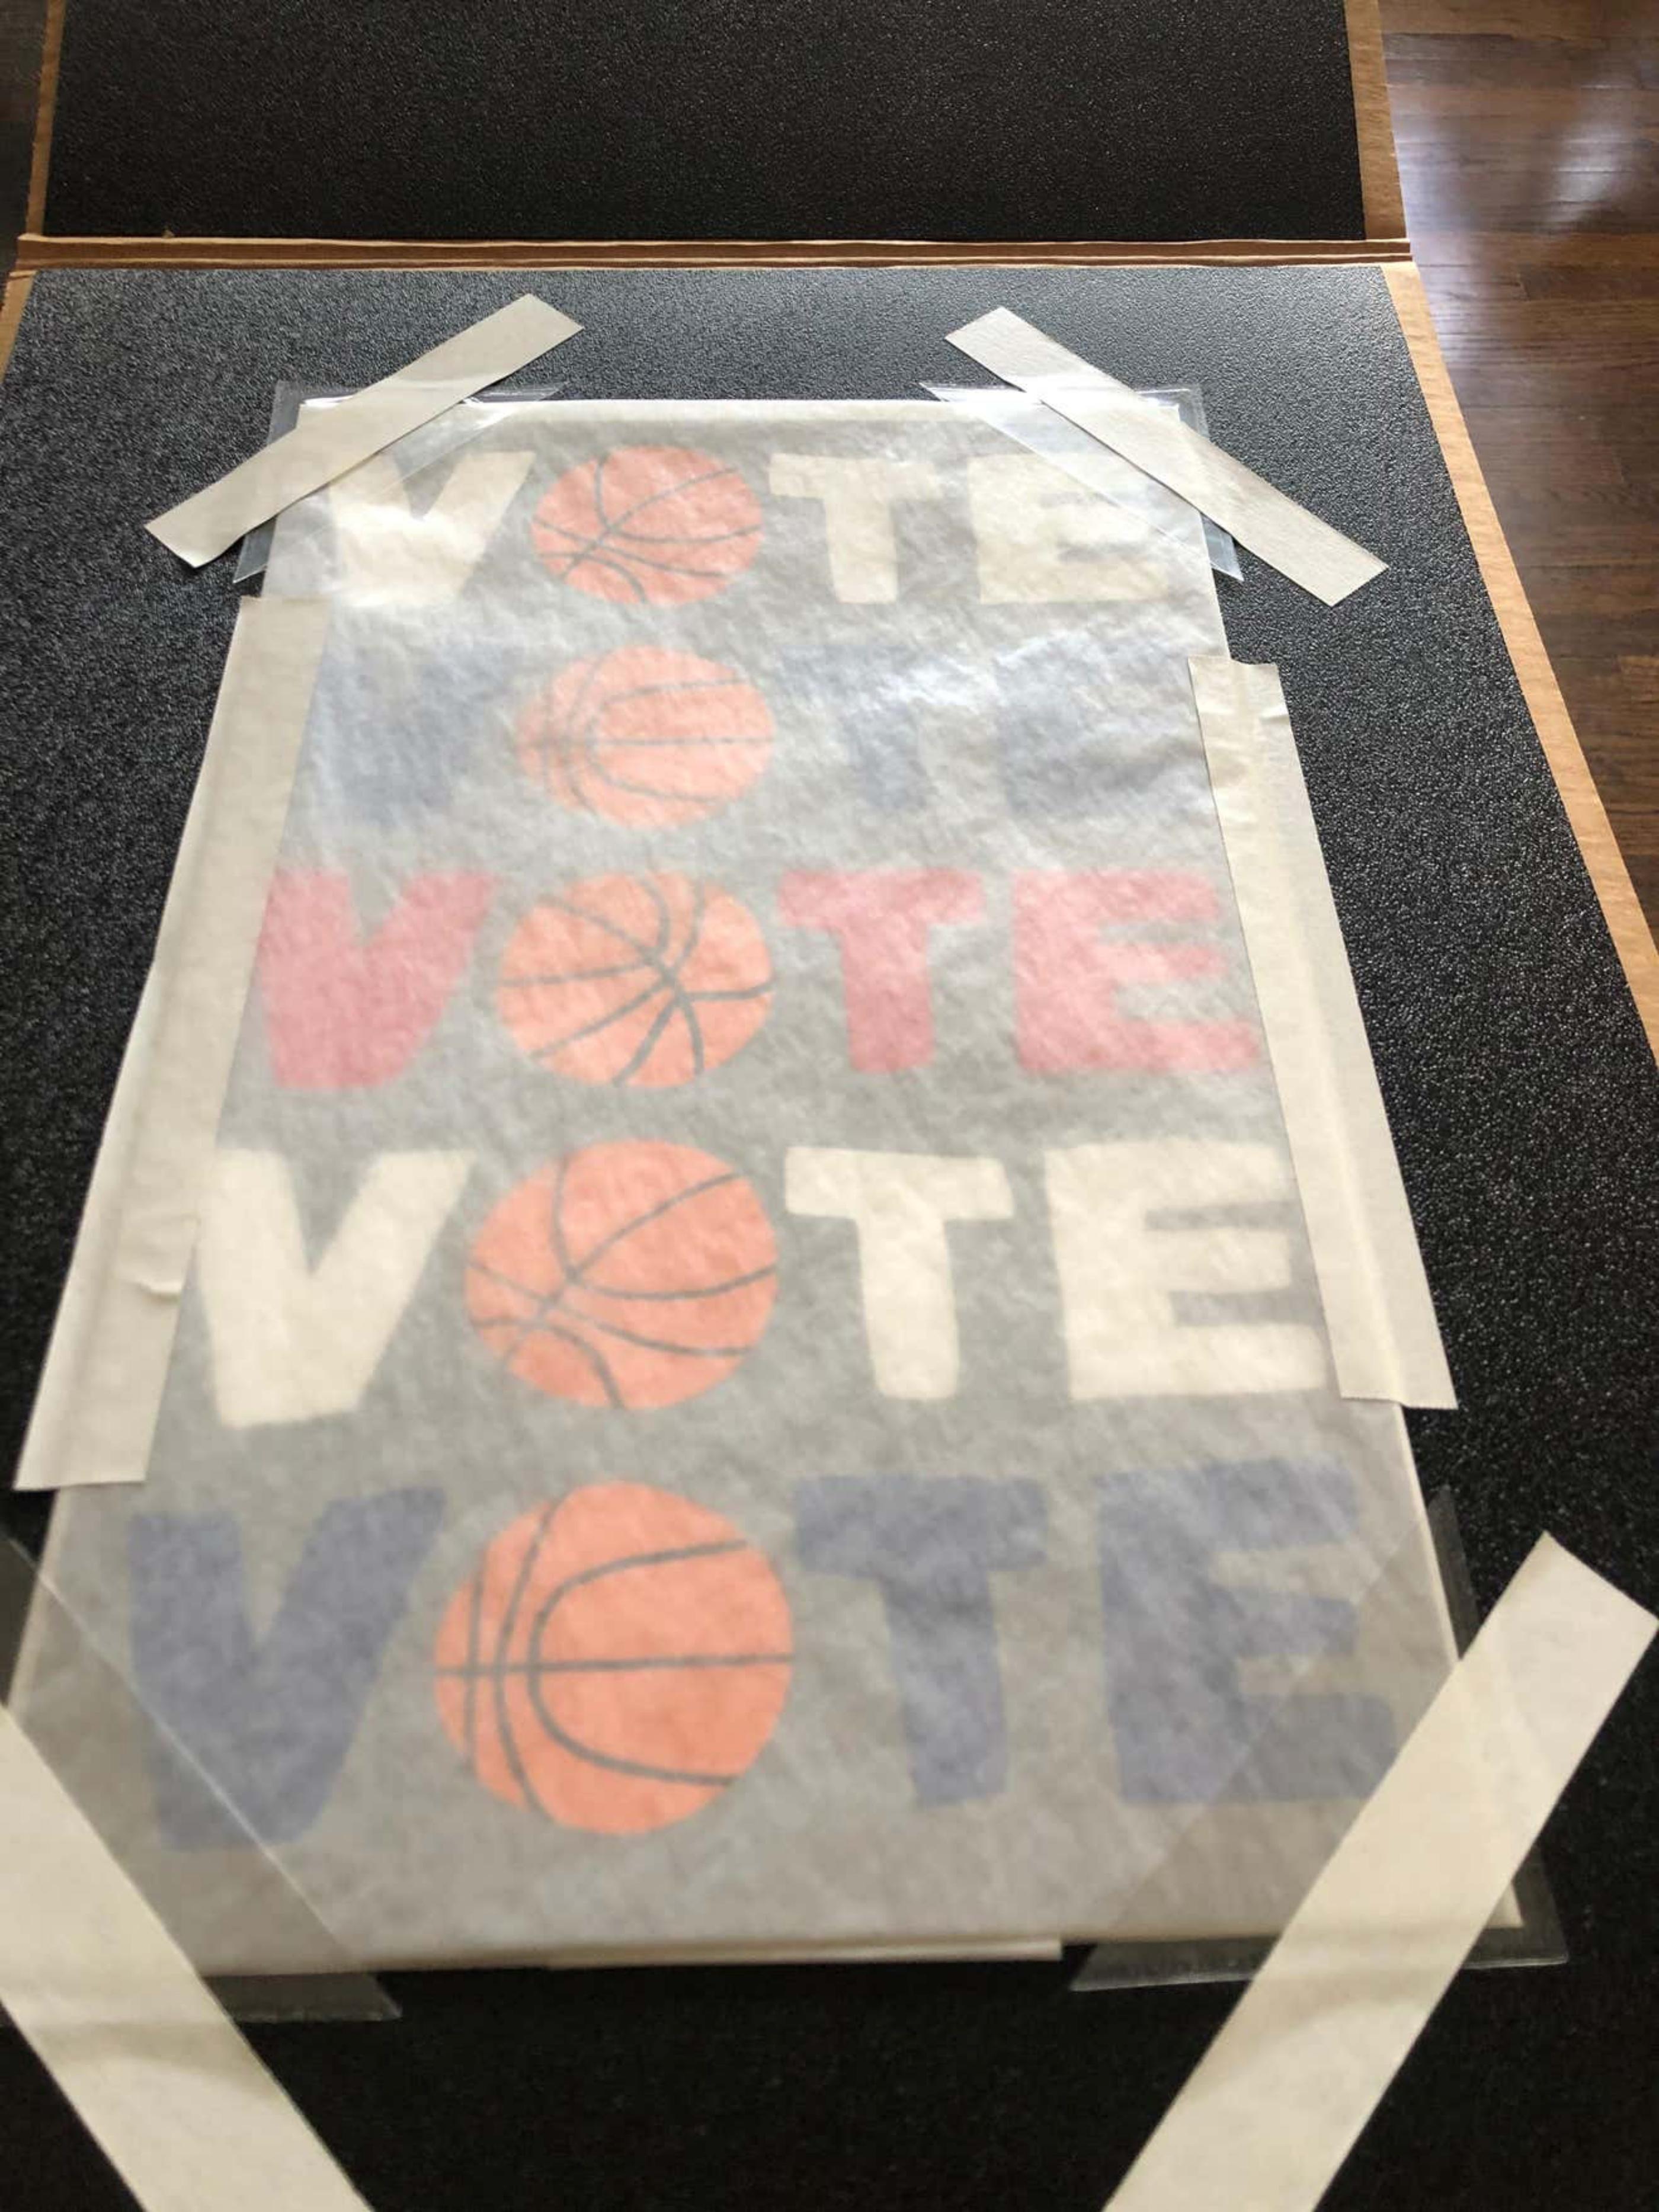 VOTE, sérigraphie politique en édition limitée avec la célèbre image de basket-ball de l'artiste - Print de Jonas Wood